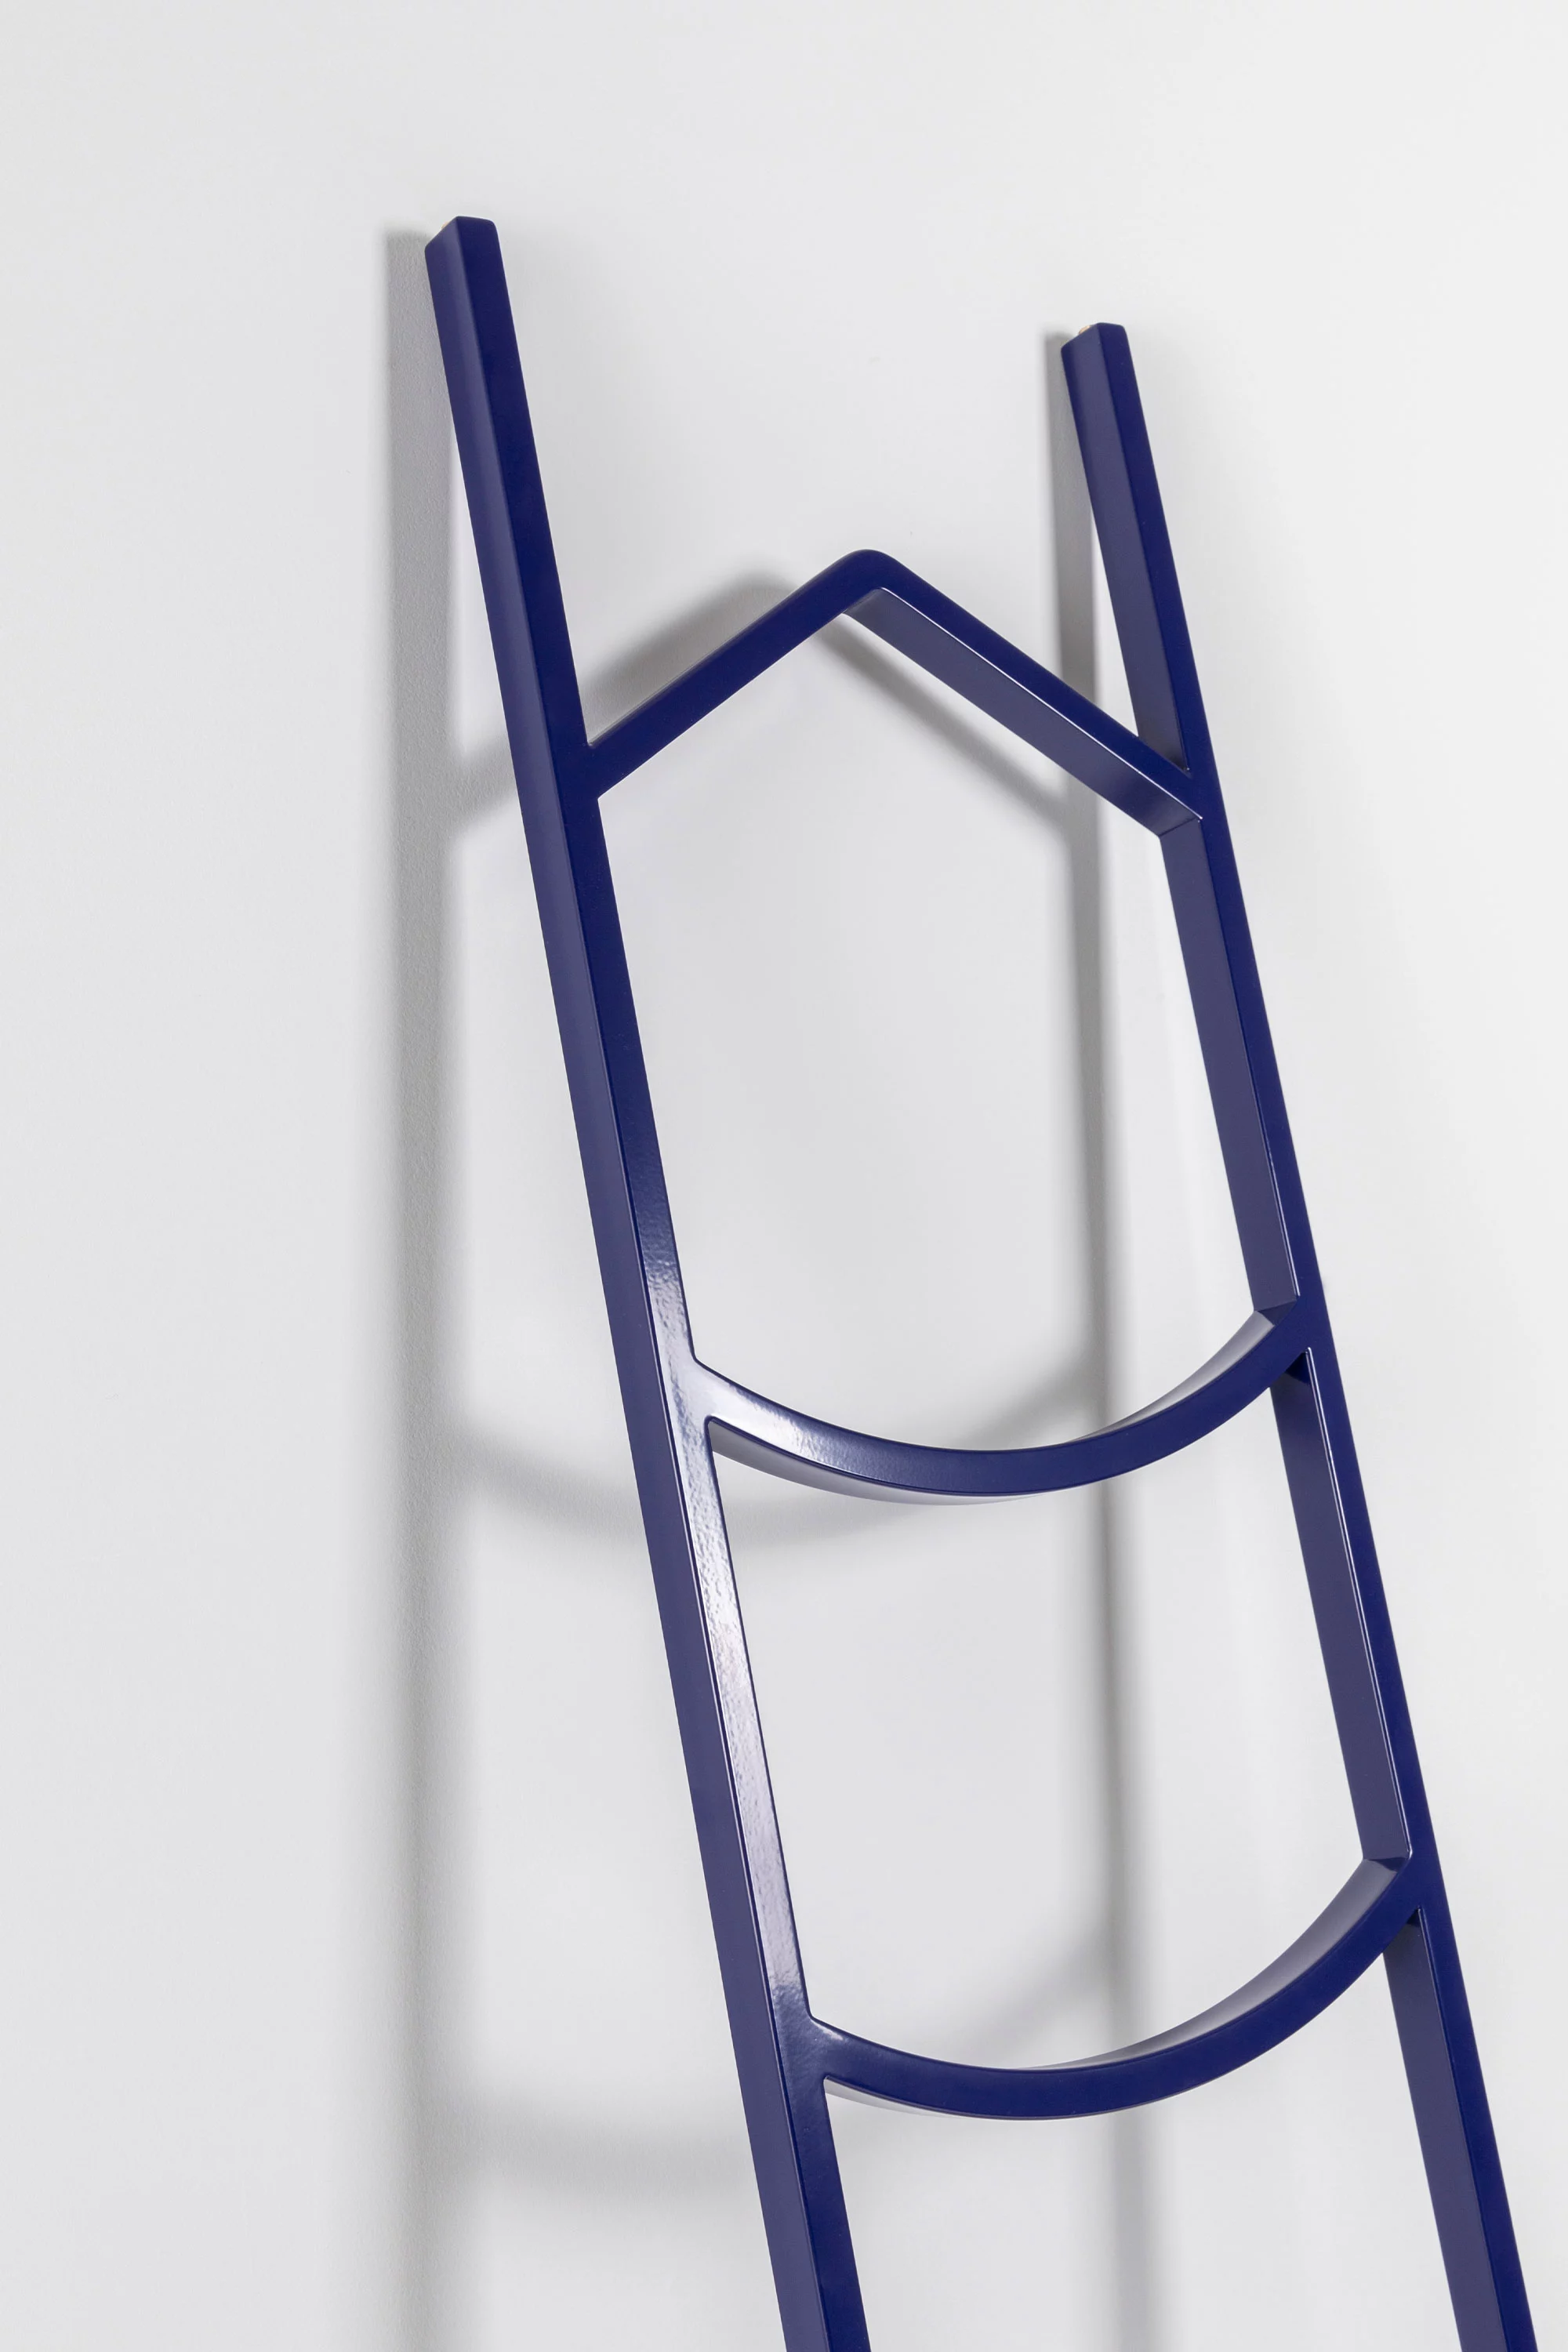 Ladder - Muller Van Severen - Miscellaneous - Galerie kreo